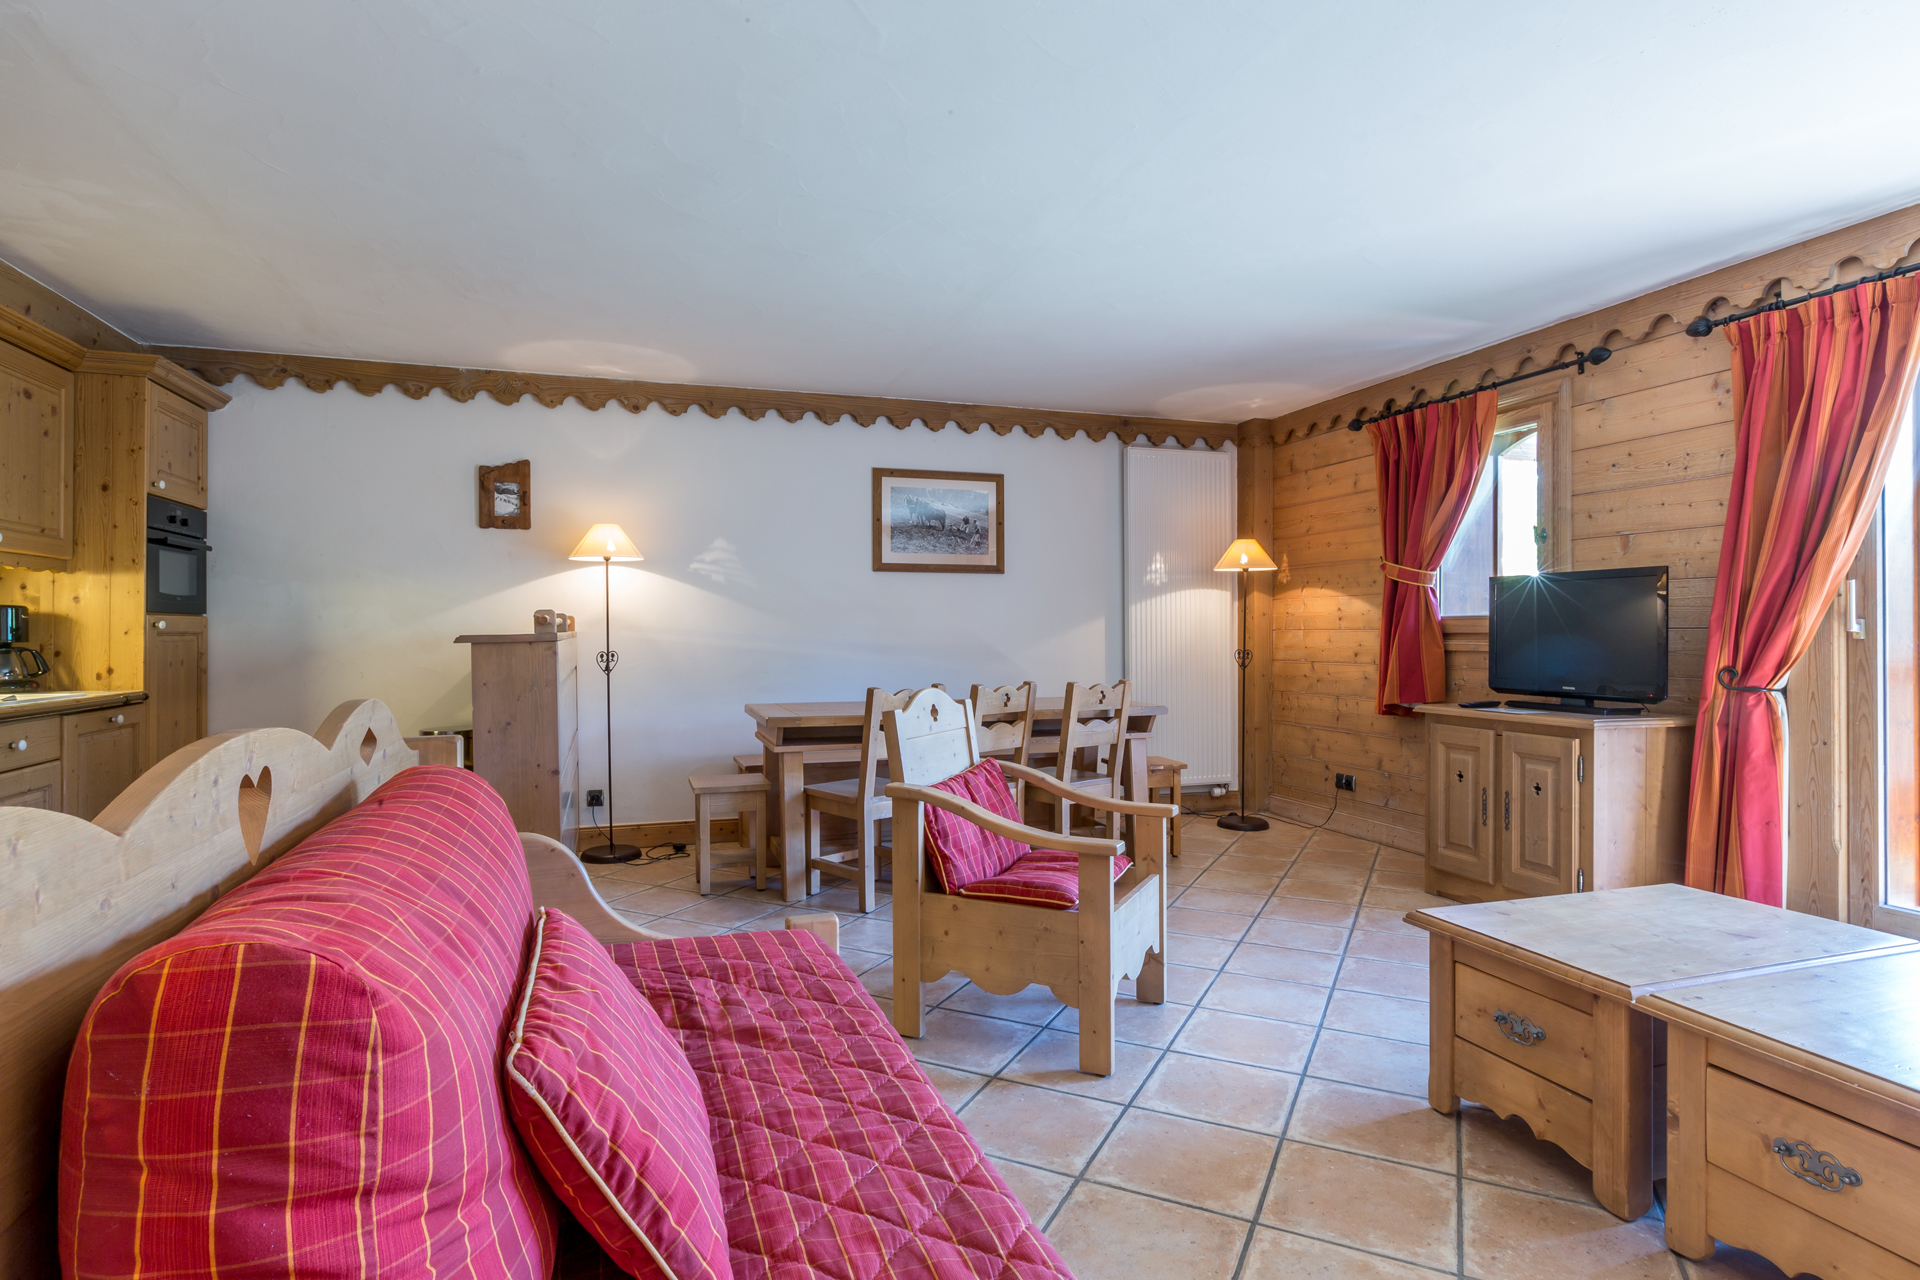 3 rooms sleeping cabine 8 personnes Premium - Apartment Saint martin de belleville - Saint Martin de Belleville